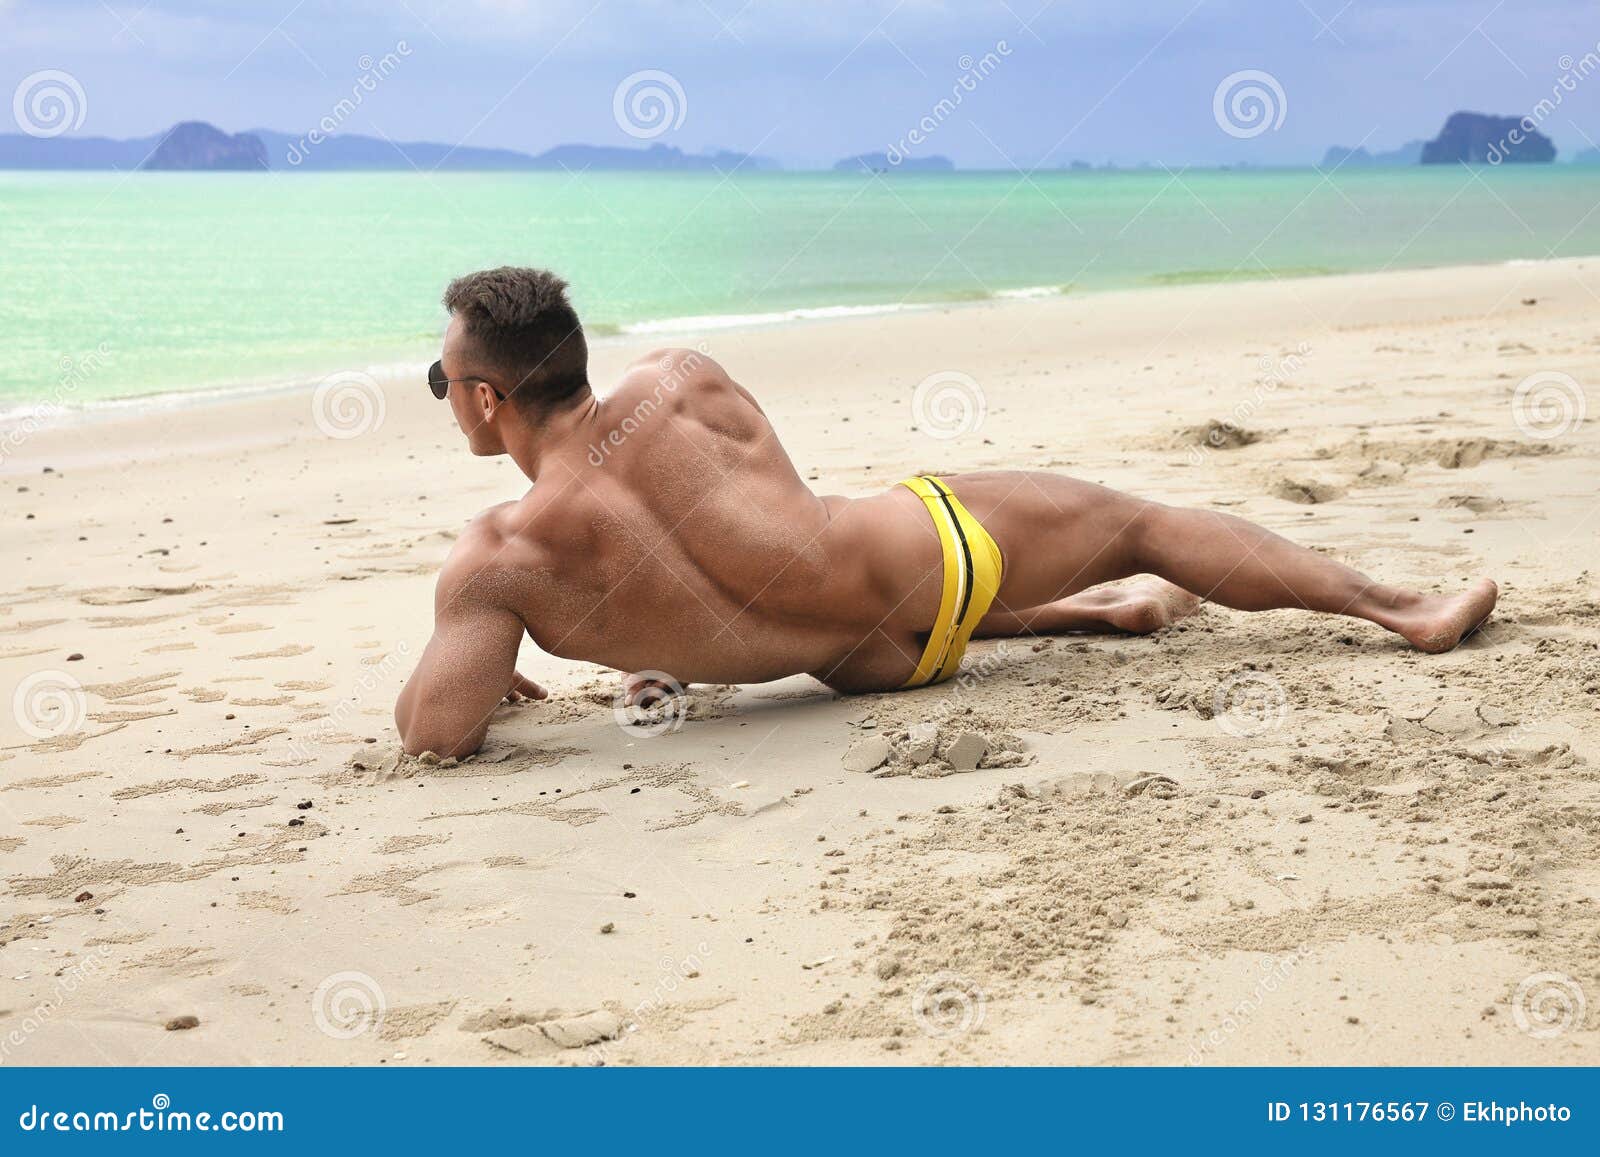 Man In Speedo On Beach Online